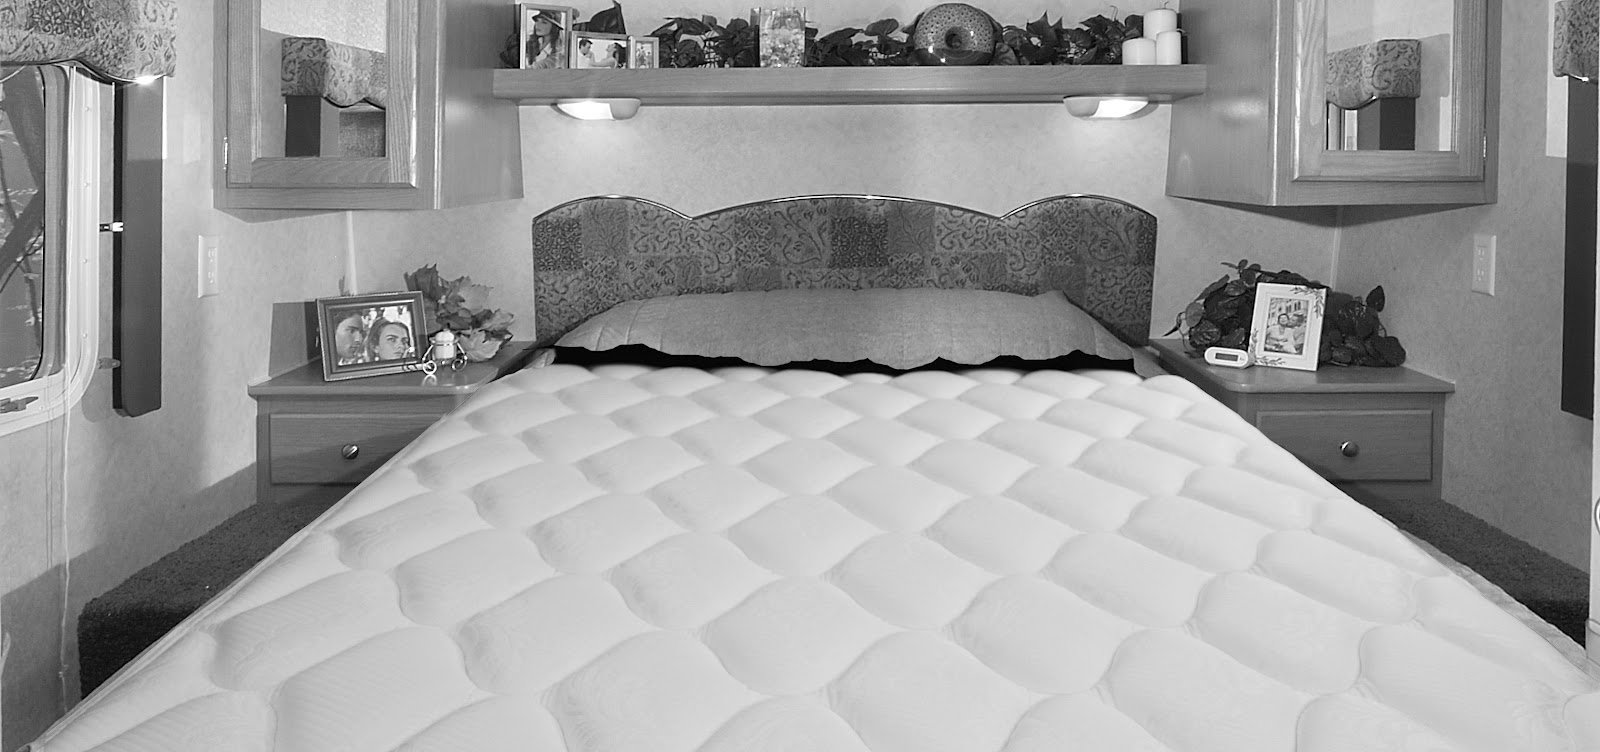 queen size mattress 60 x 74